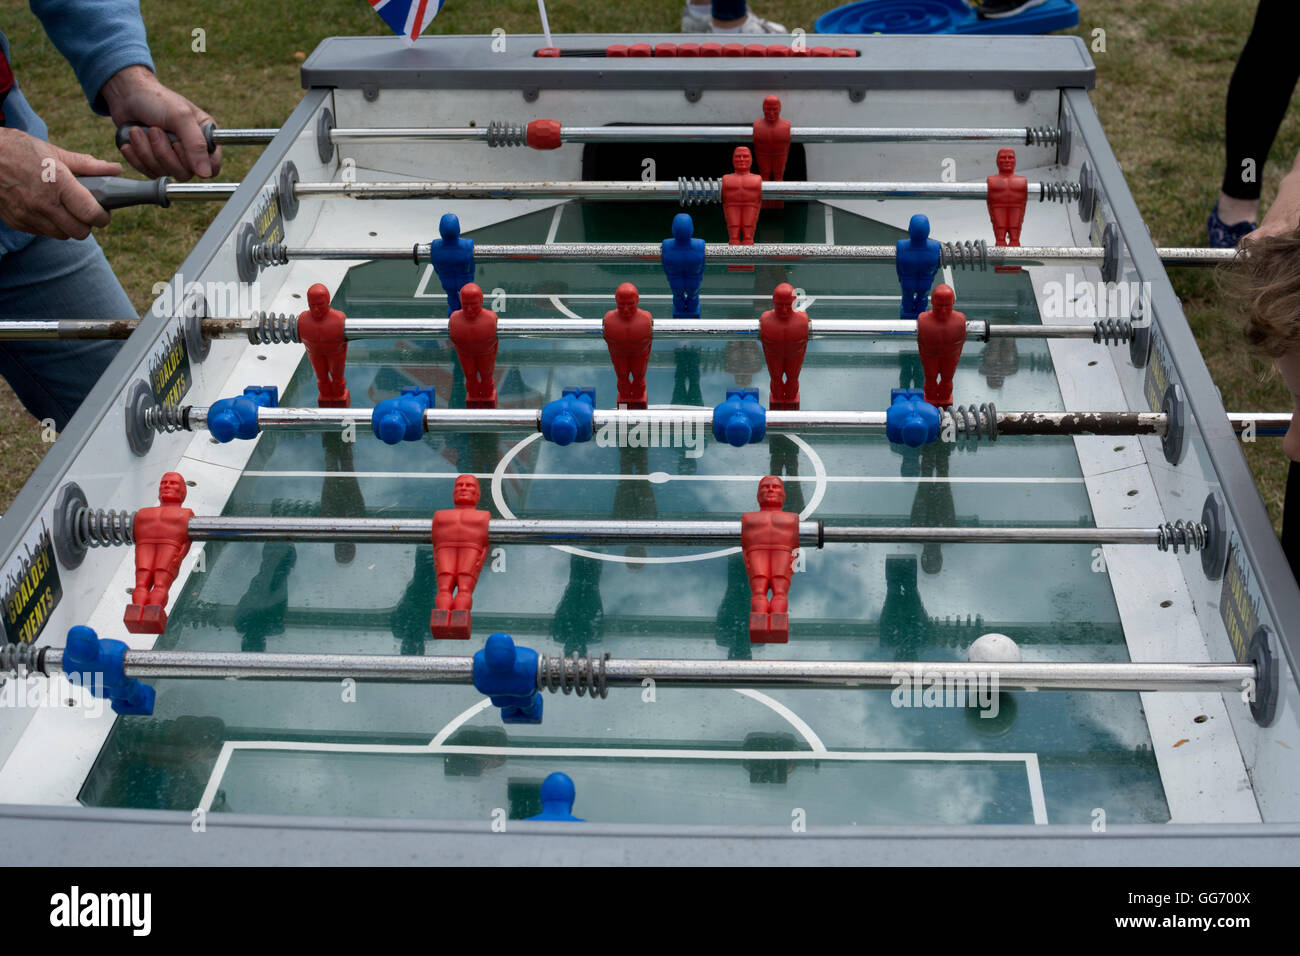 Un juego de fútbol de mesa Foto de stock